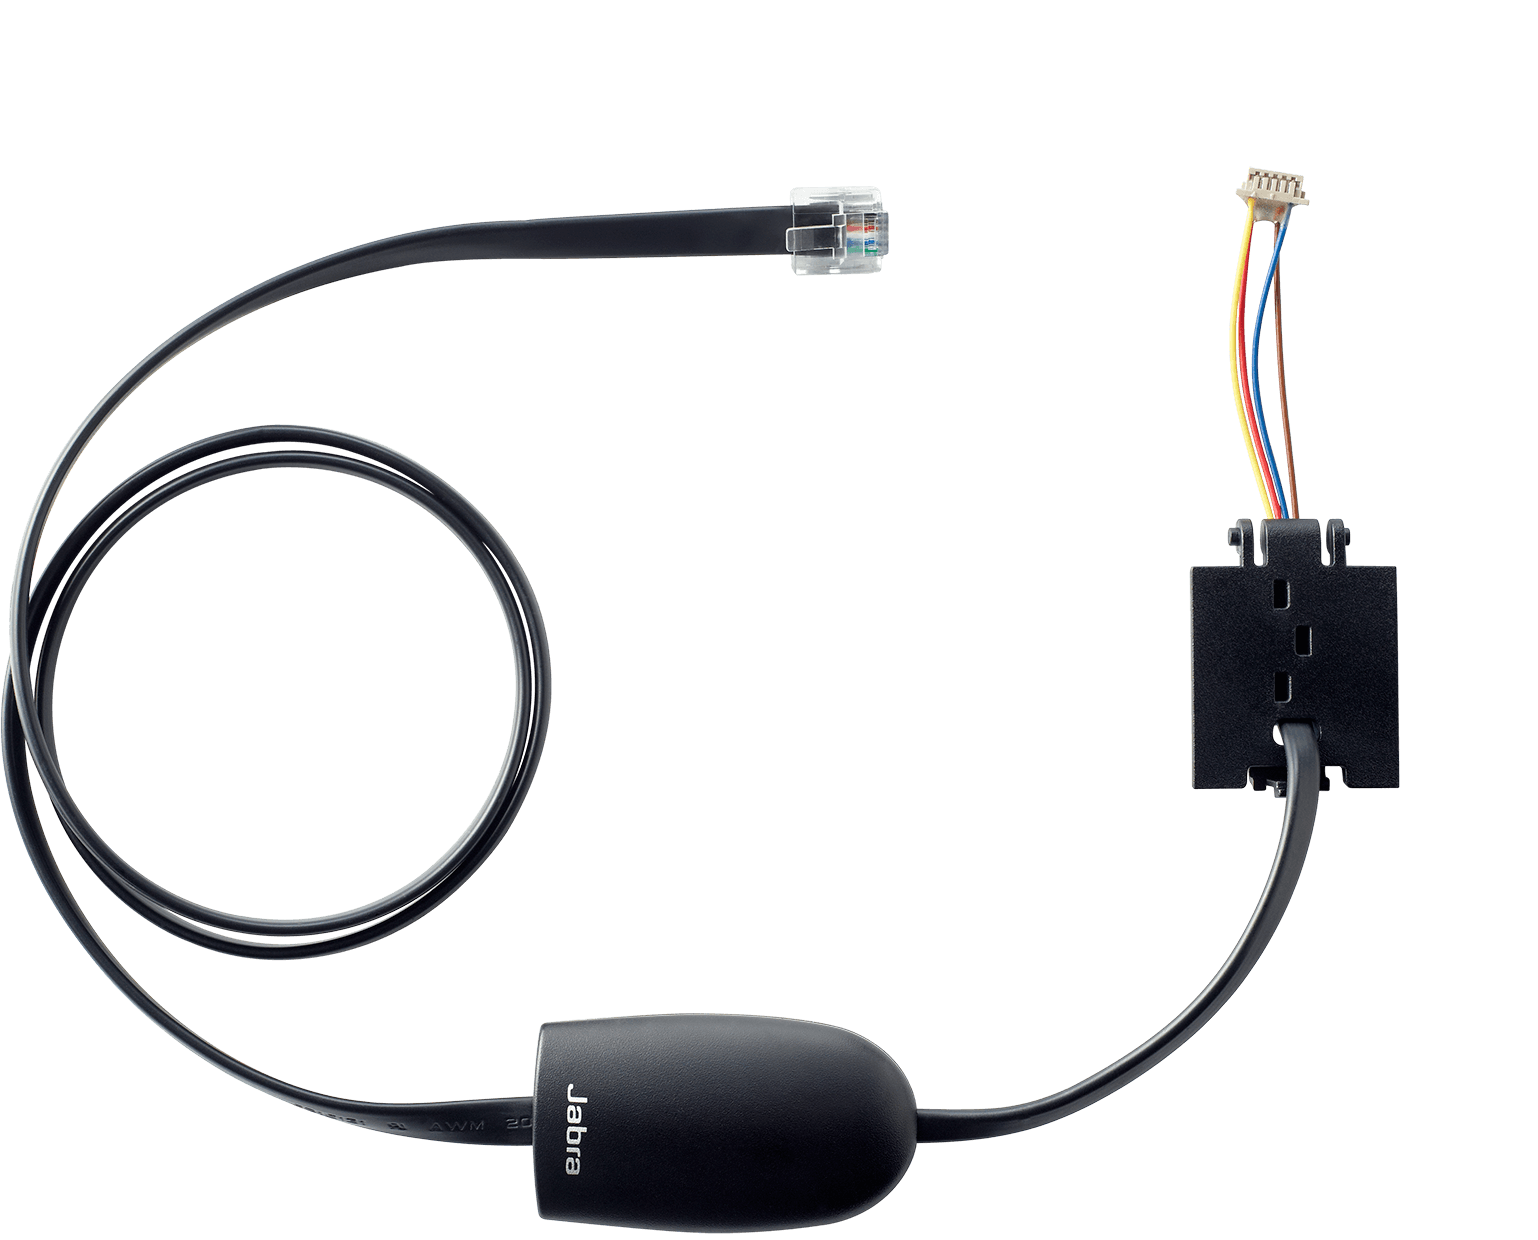 Hook Switch - Jabra Link / 14201-31 | 2203 – Interruptor de gancho electrónico, Solución para teléfonos NEC, Responder llamada, Finalizar llamada, Tono de llamada en los auriculares, Control de volumen, Silenciar control, Rechazar llamada, Volver a marcar